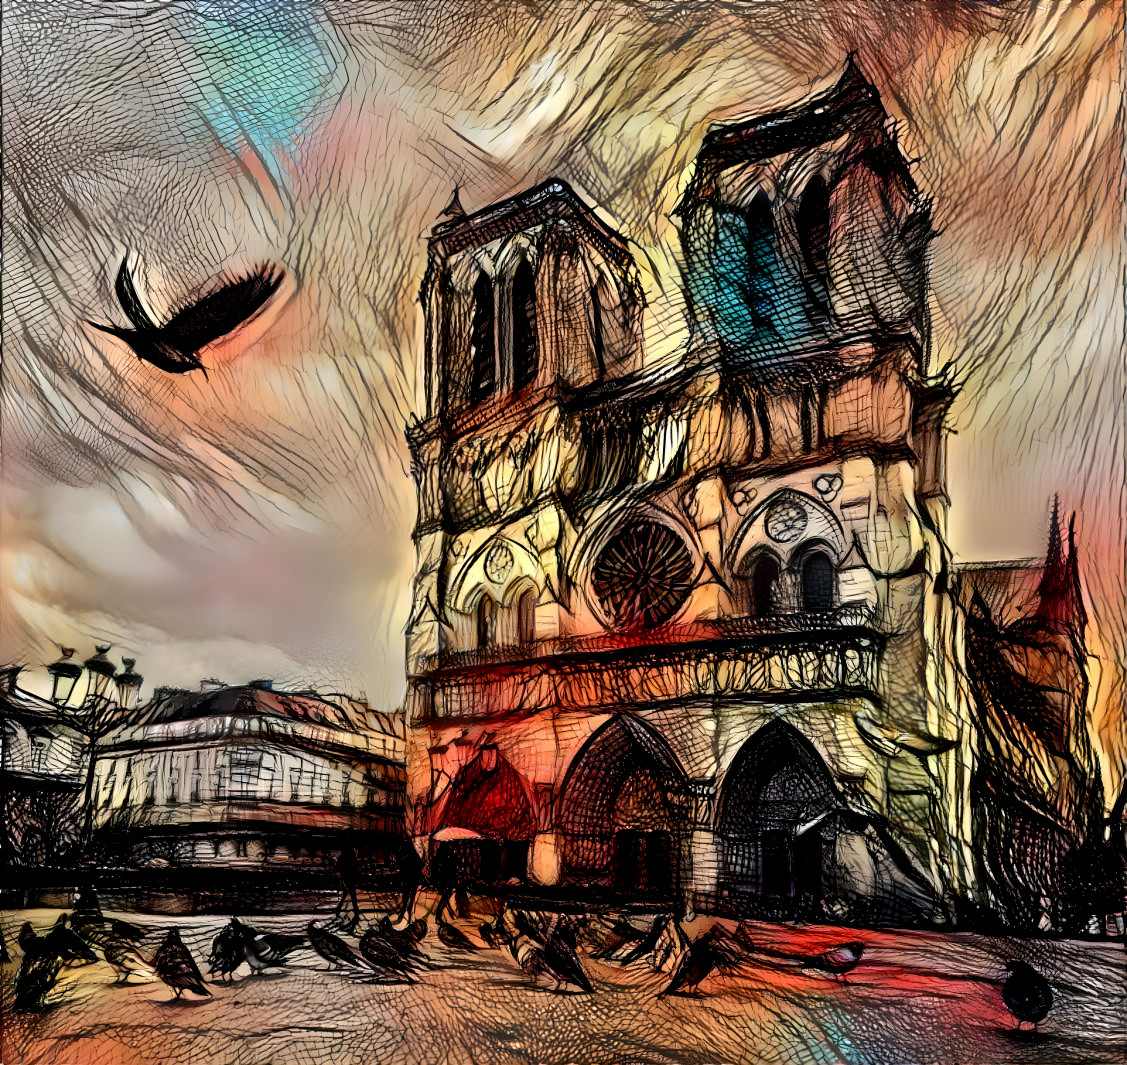 Notre Dame de Paris ... was burning